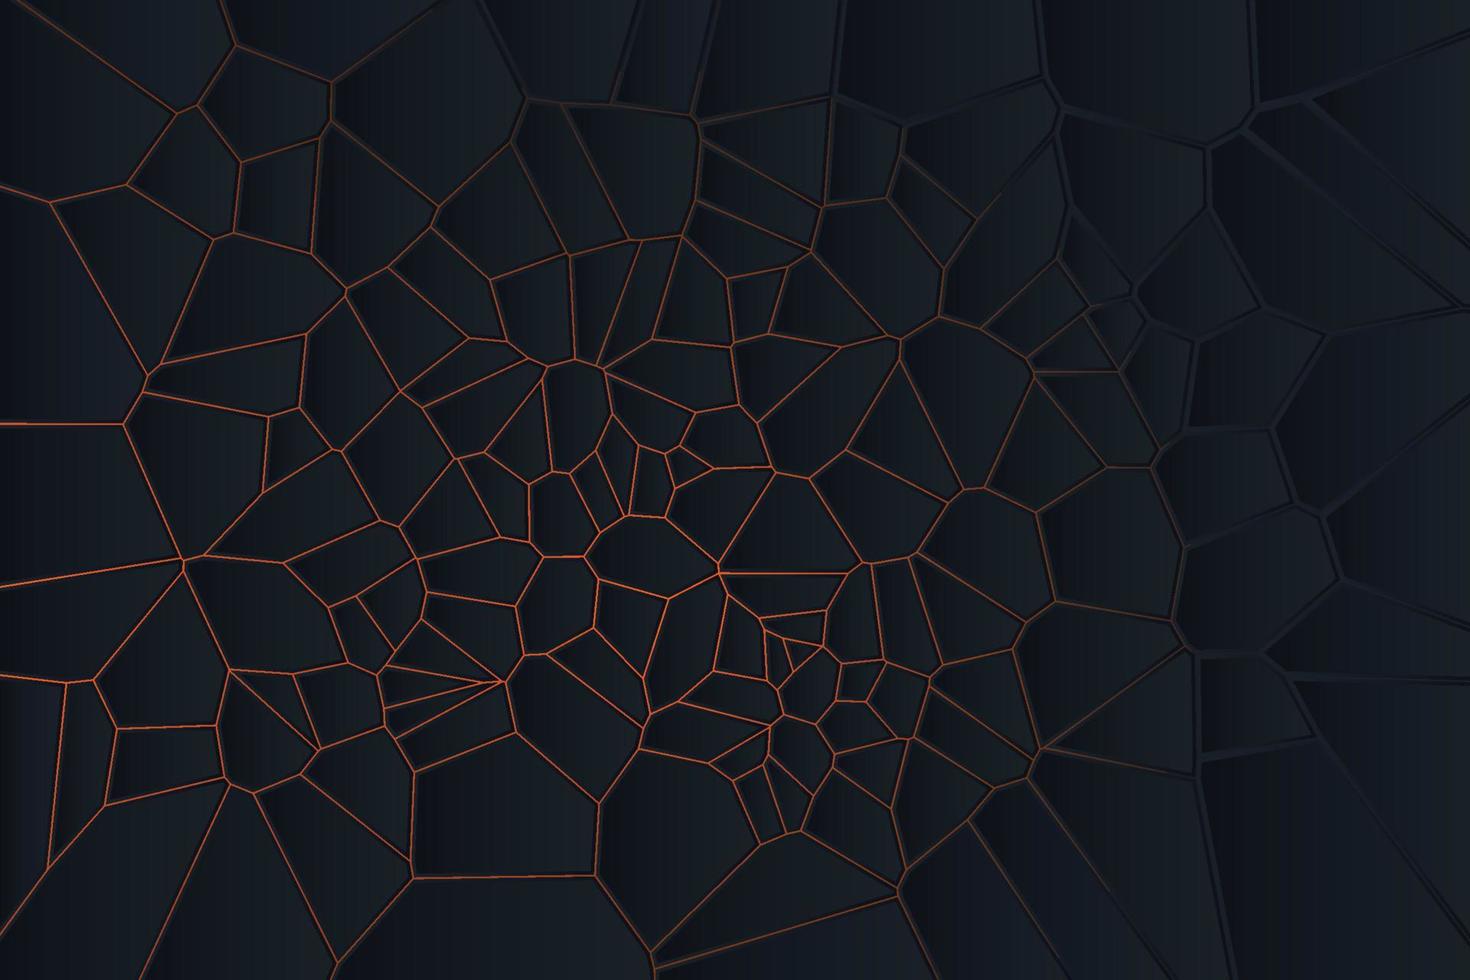 le diagramme de voronoi bloque le motif cellulaire. conception de fond géométrique dans un style abstrait vecteur